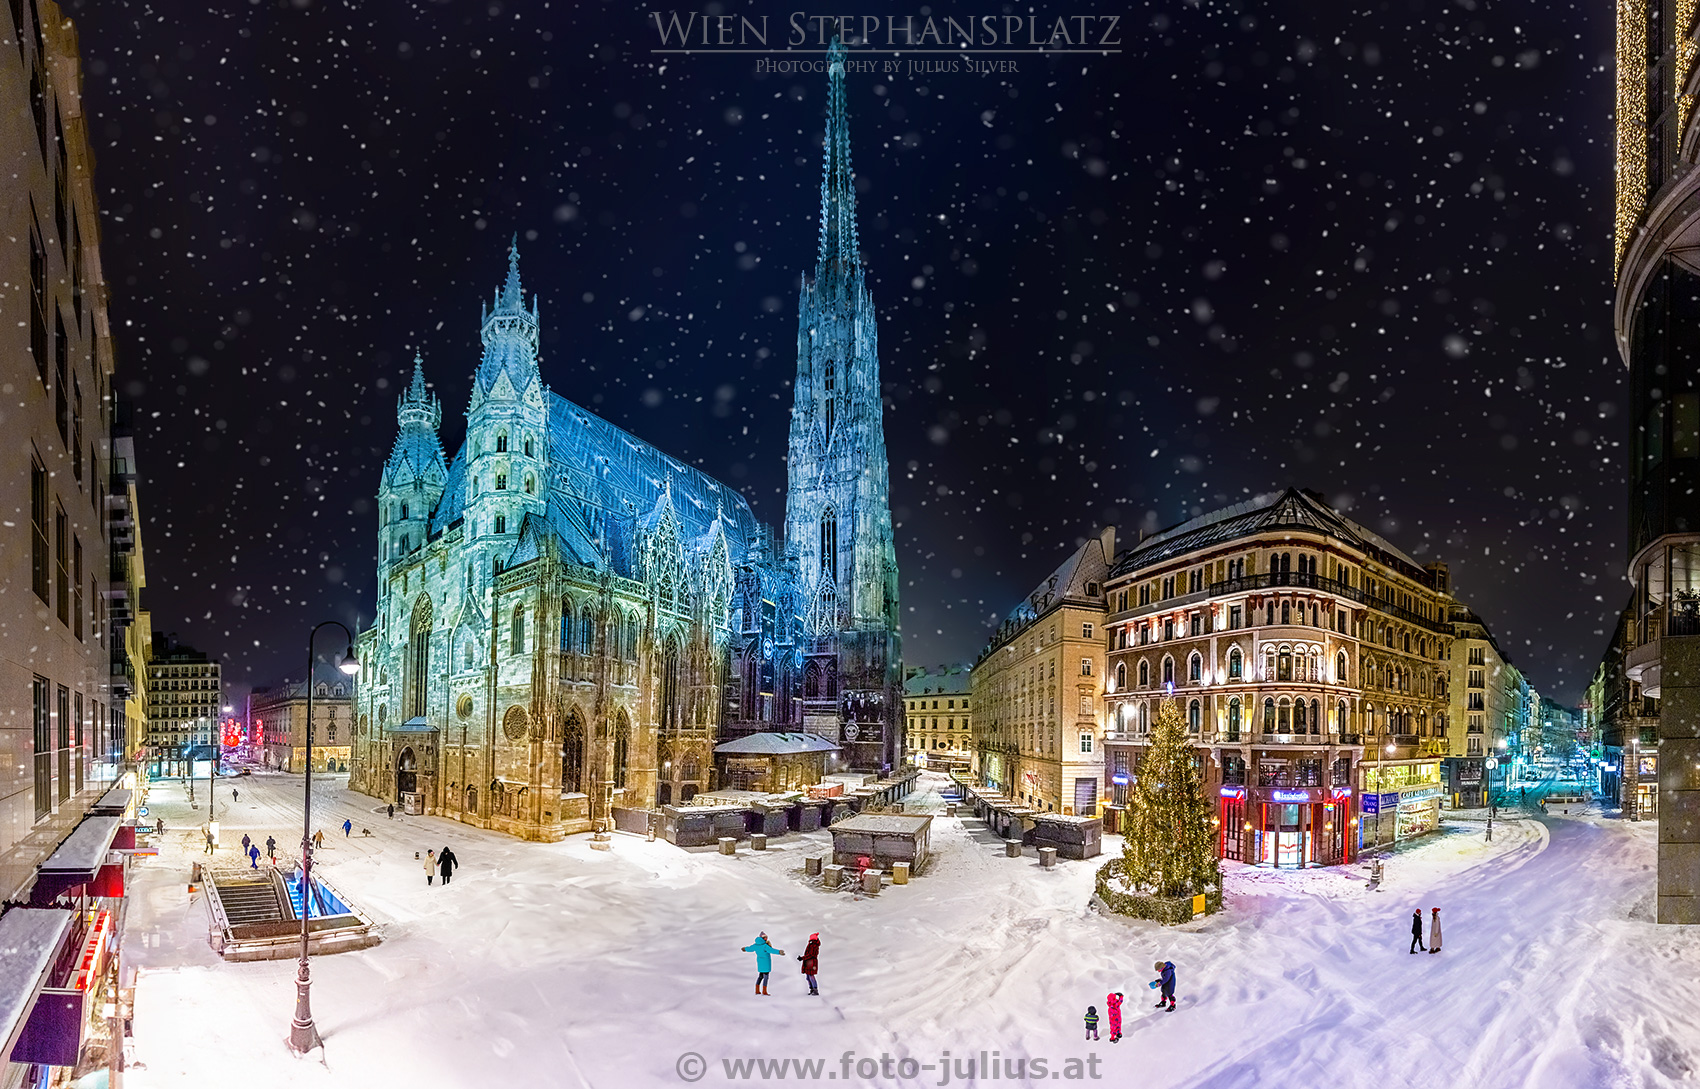 W6942a_Wien_Stephansplatz_Winter.jpg, 528kB